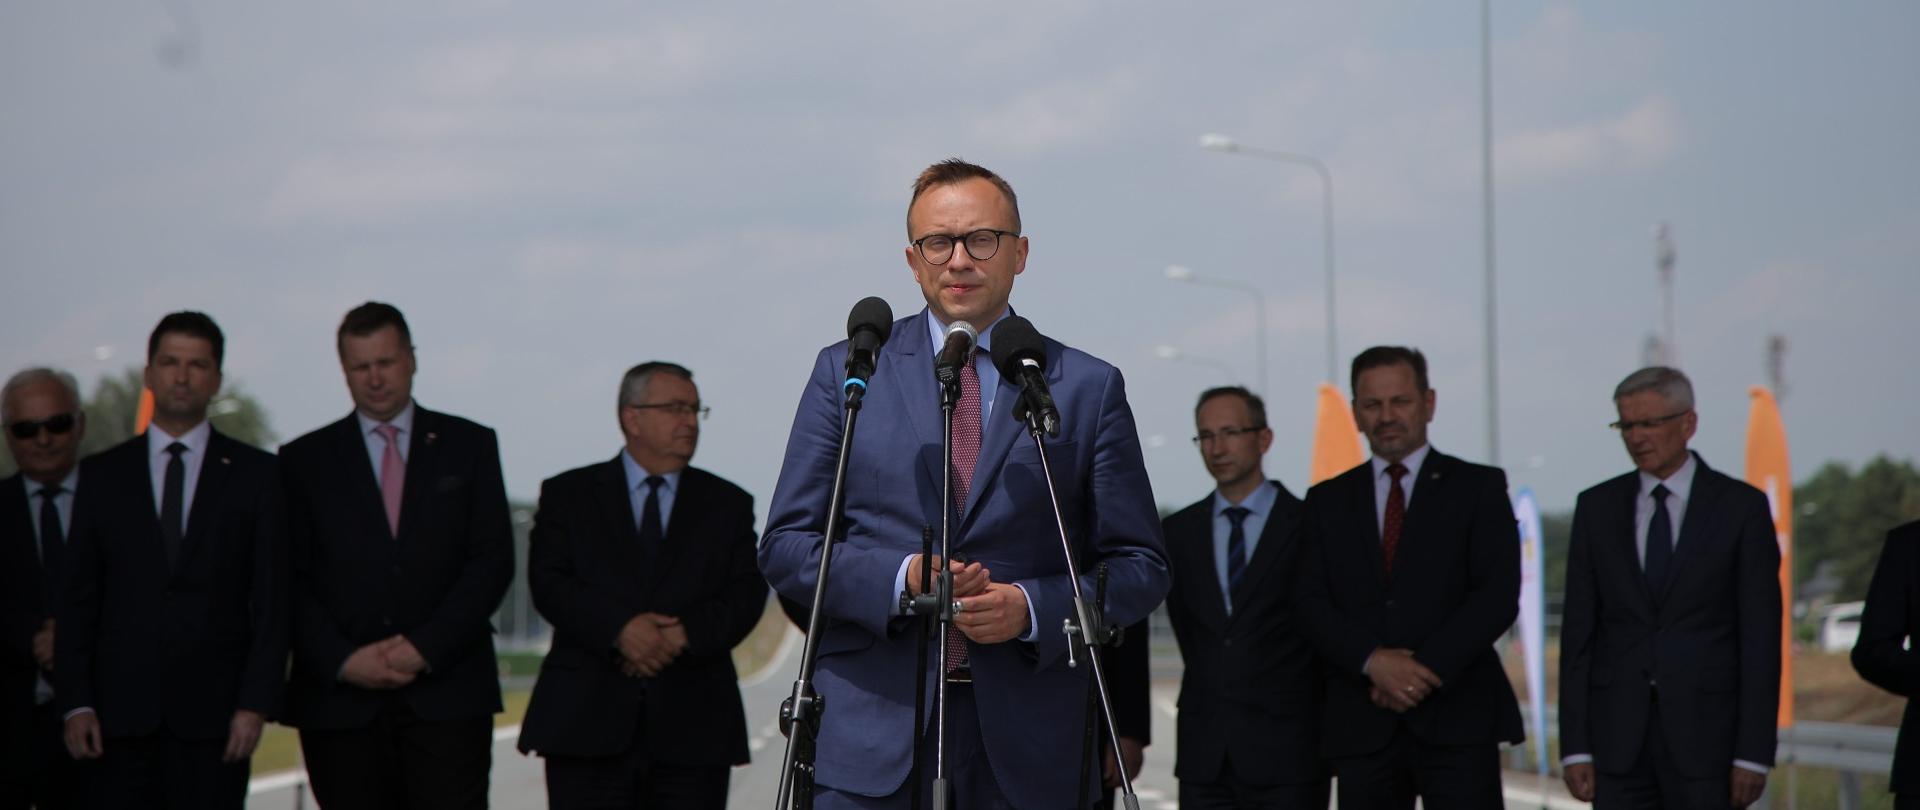 Minister Soboń stoi przy trzech mikrofonach. Za nimi stoi grupa mężczyzn w garniturach. 